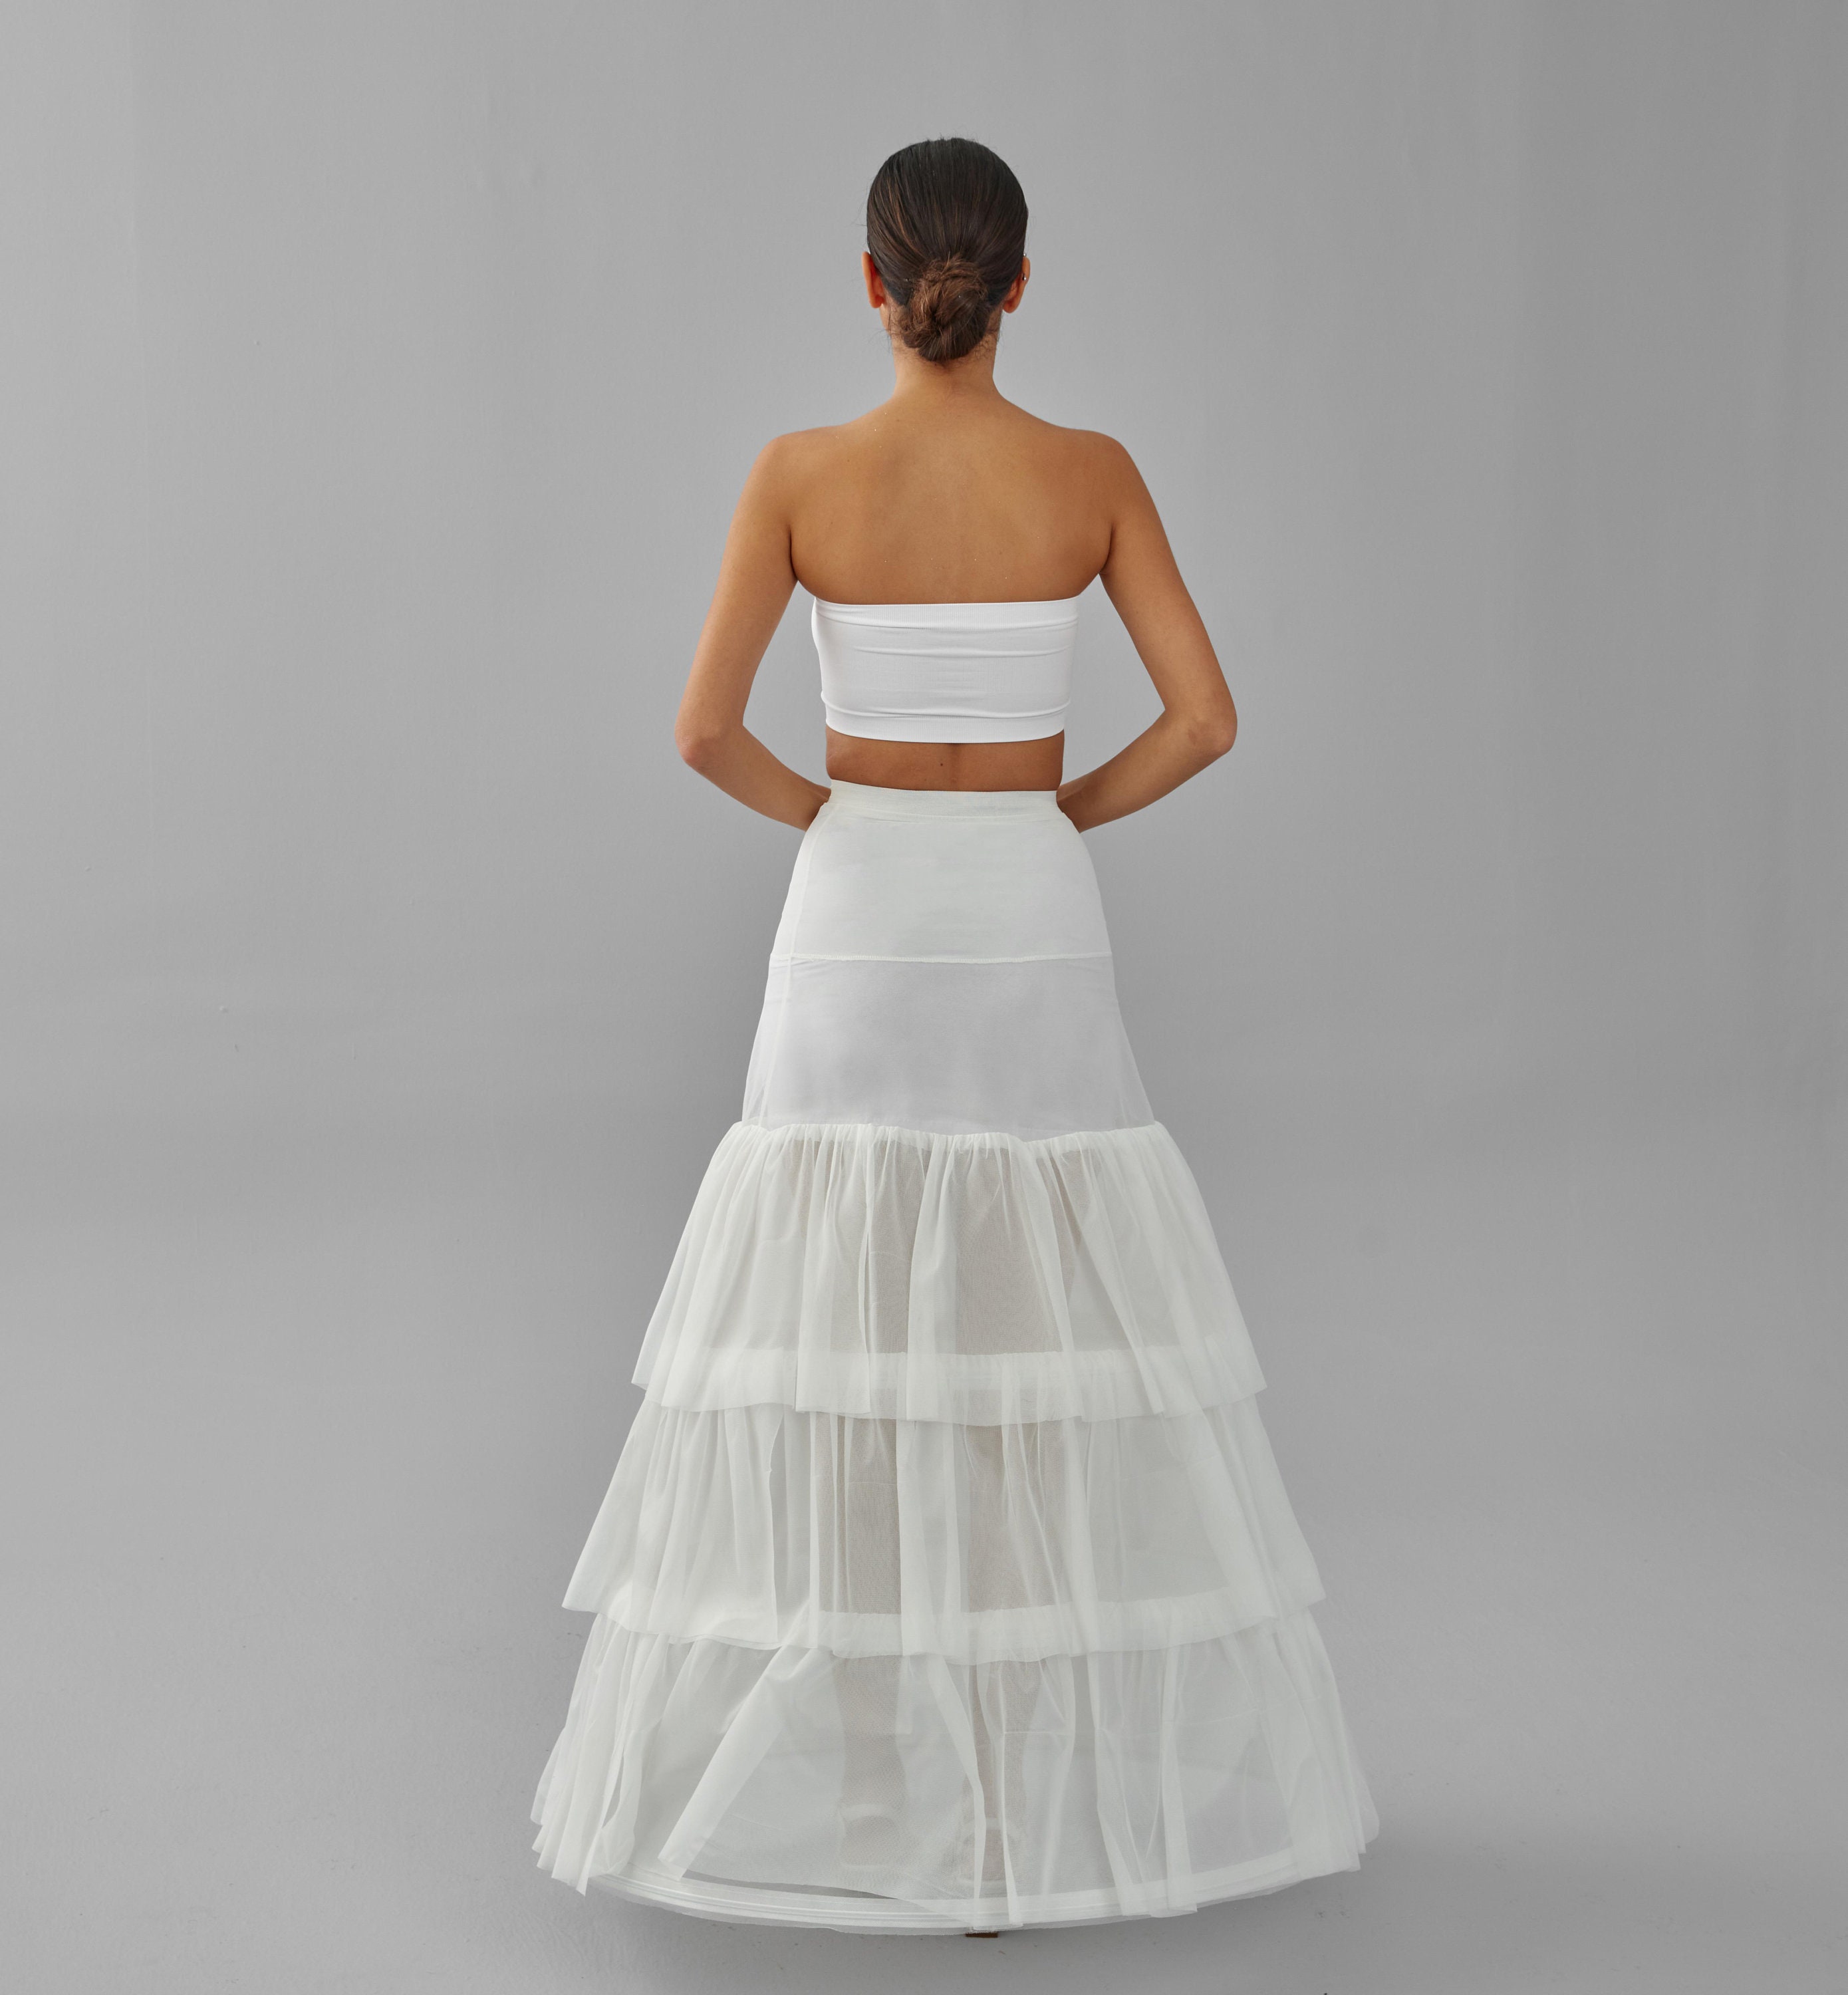 JenPen Wedding Gown Underskirt Drawstring Bride Buddy White Bridal Underskirt for Dresses Toilet Petticoat for Wedding Dress